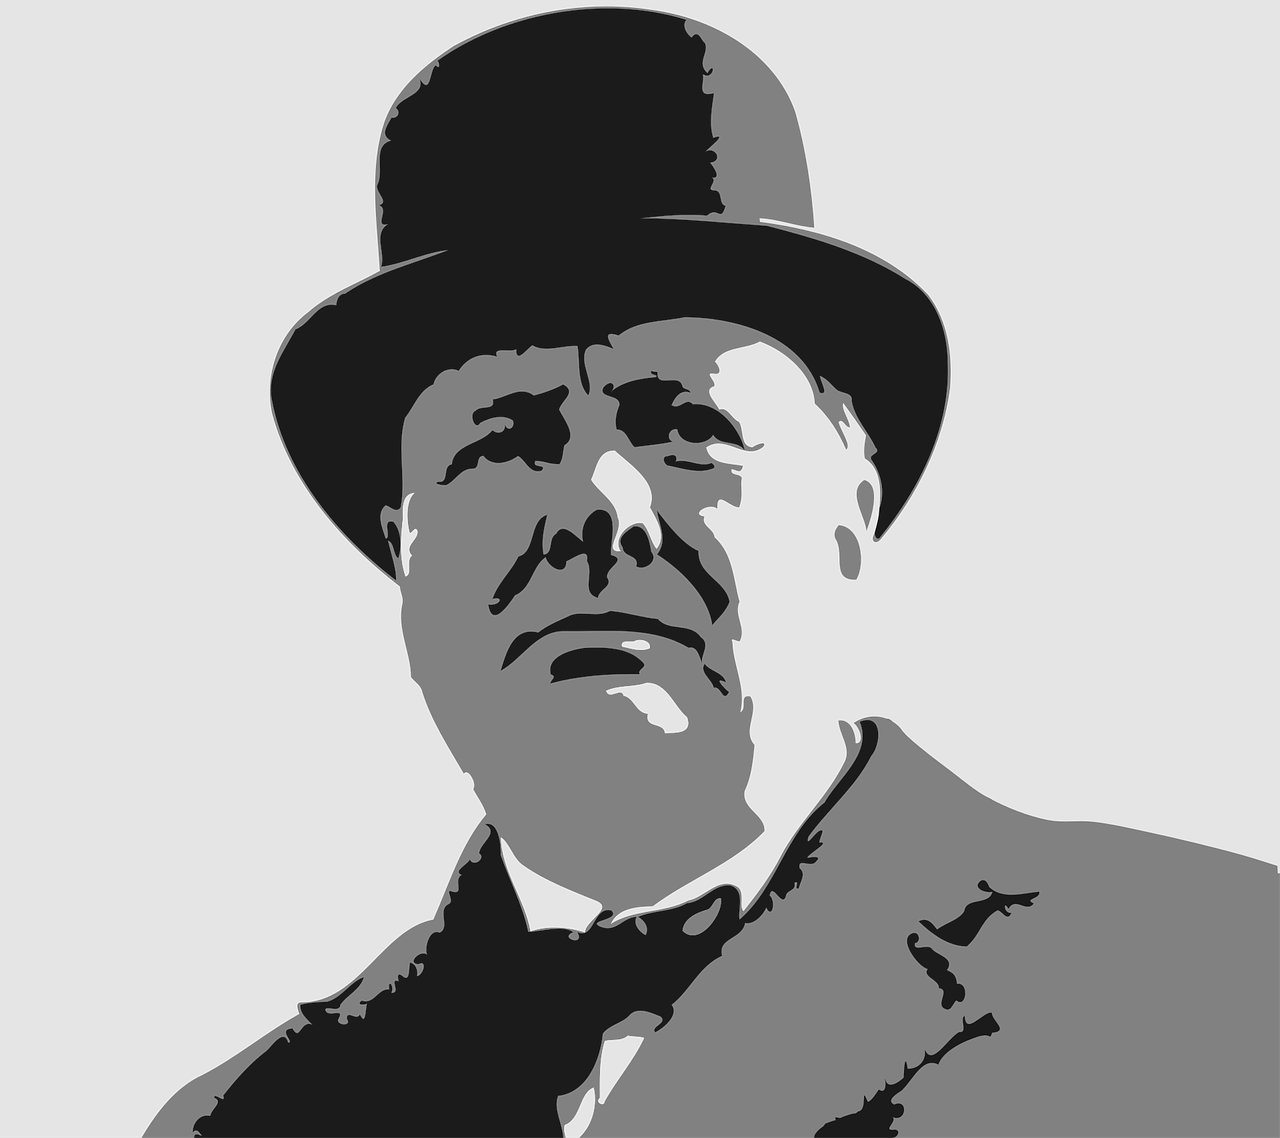 Winston Churchill leadership style